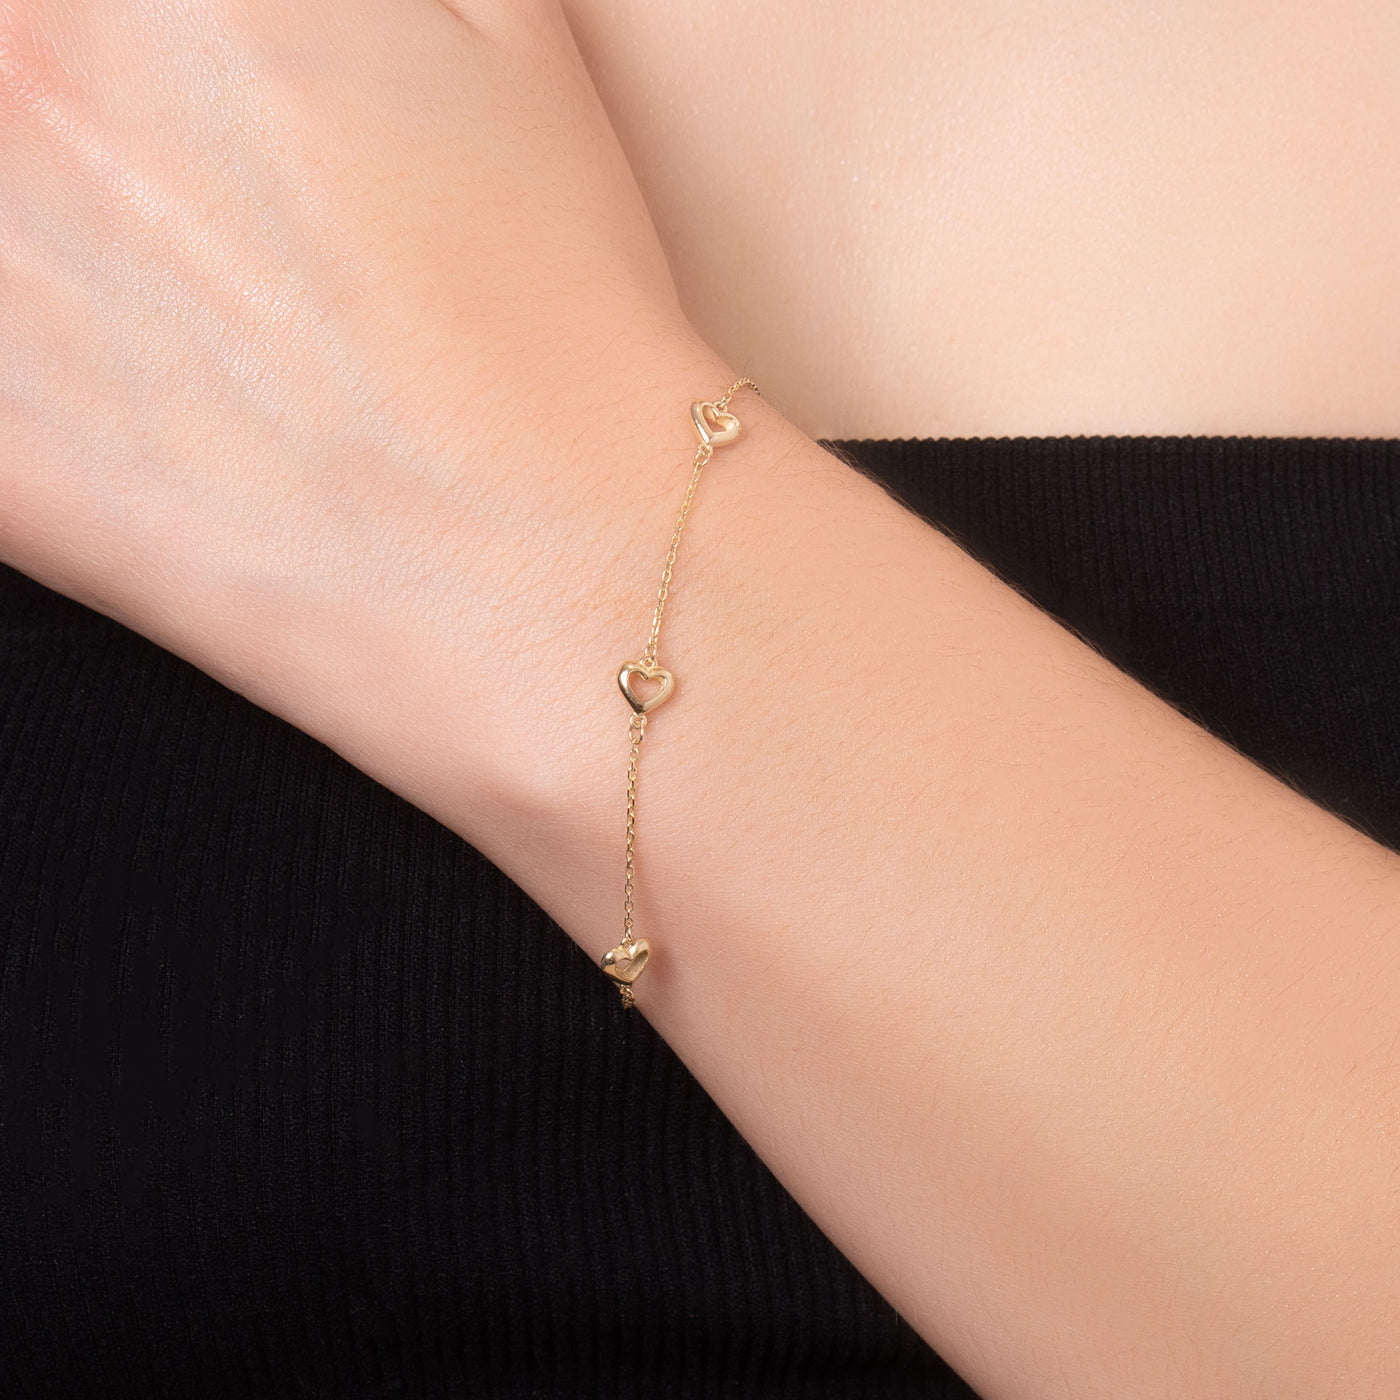 14K Solid Gold Alternating Heart Chain Bracelet Necklace Set